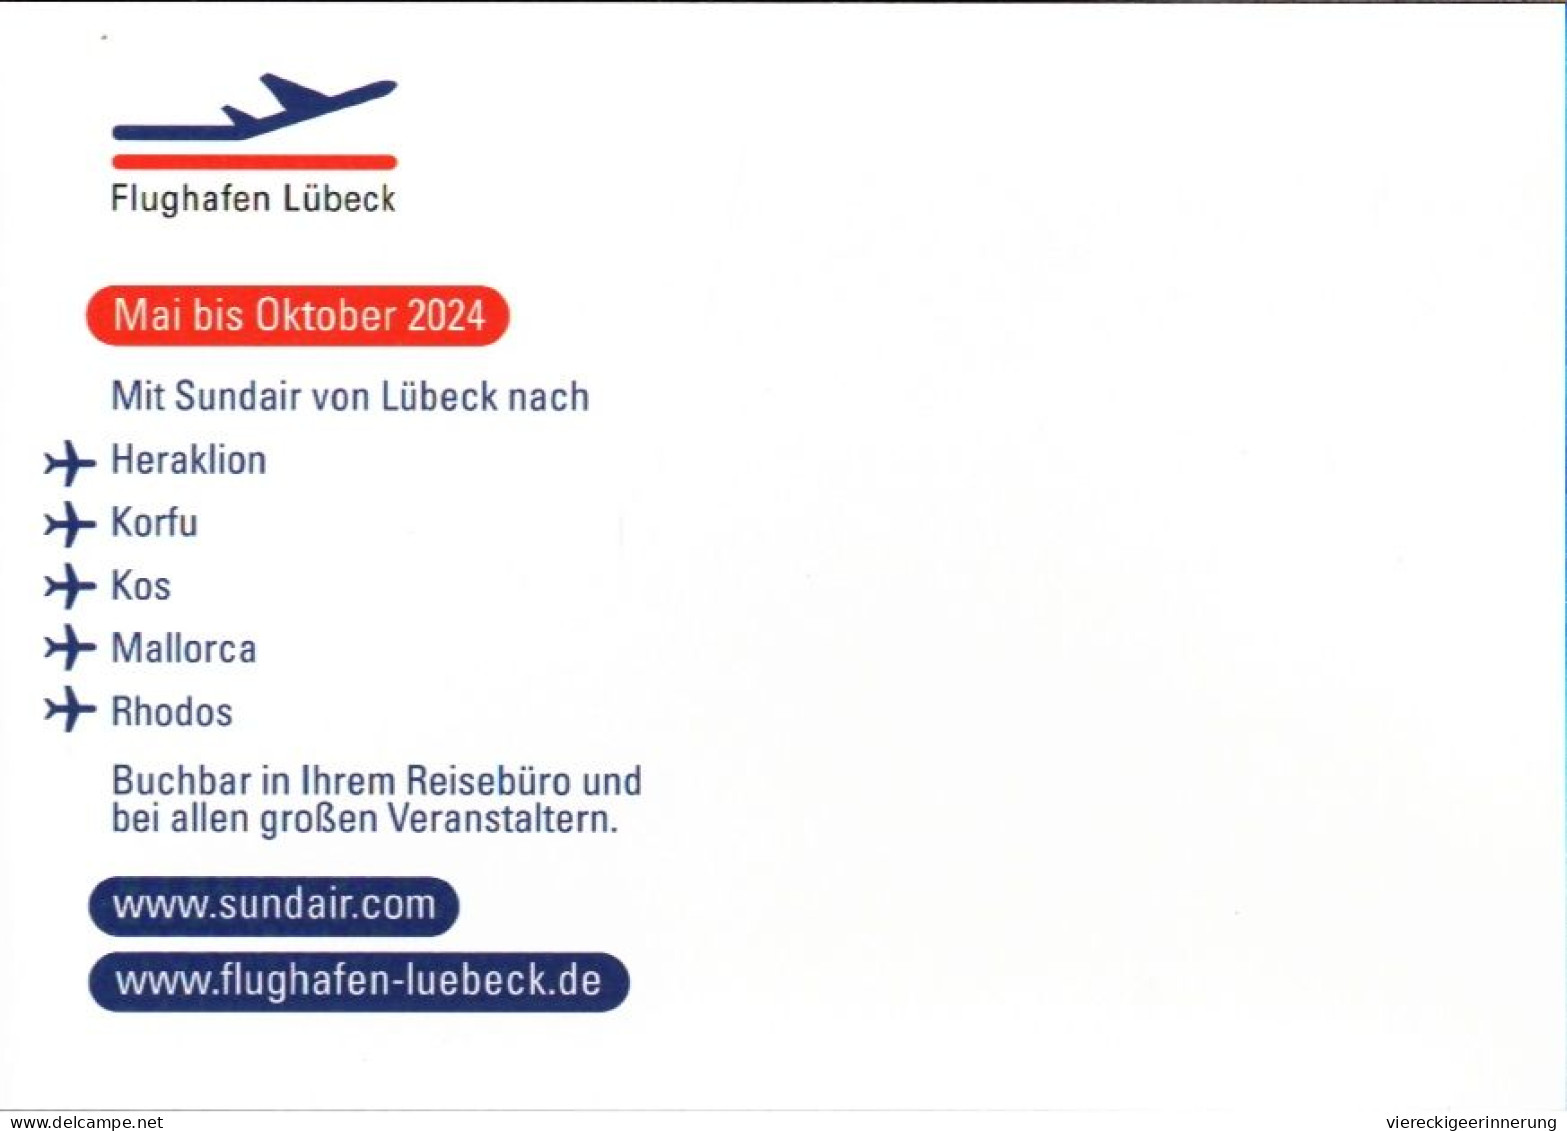 ! Moderne Ansichtskarte Flughafen Lübeck, Schön Schnell Abheben, 2024, Sund Air, Heraklion, Korfu, Kos, Mallorca, Rhodos - Aerodrome